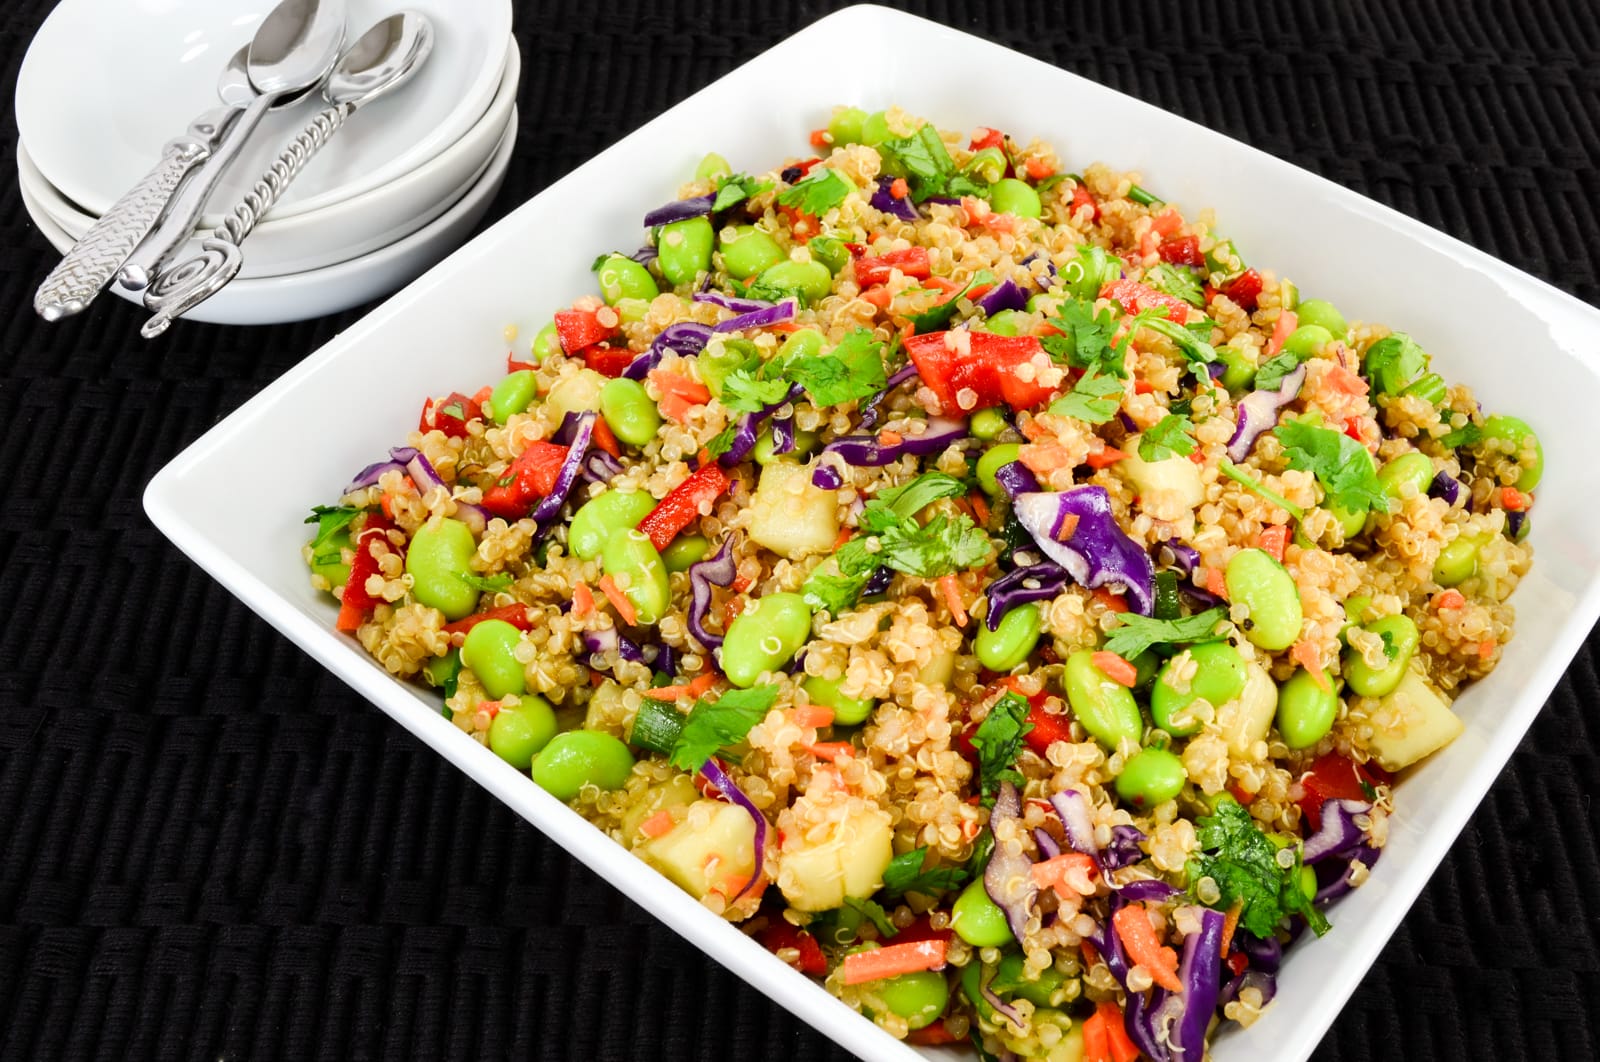 Asian Quinoa Salad